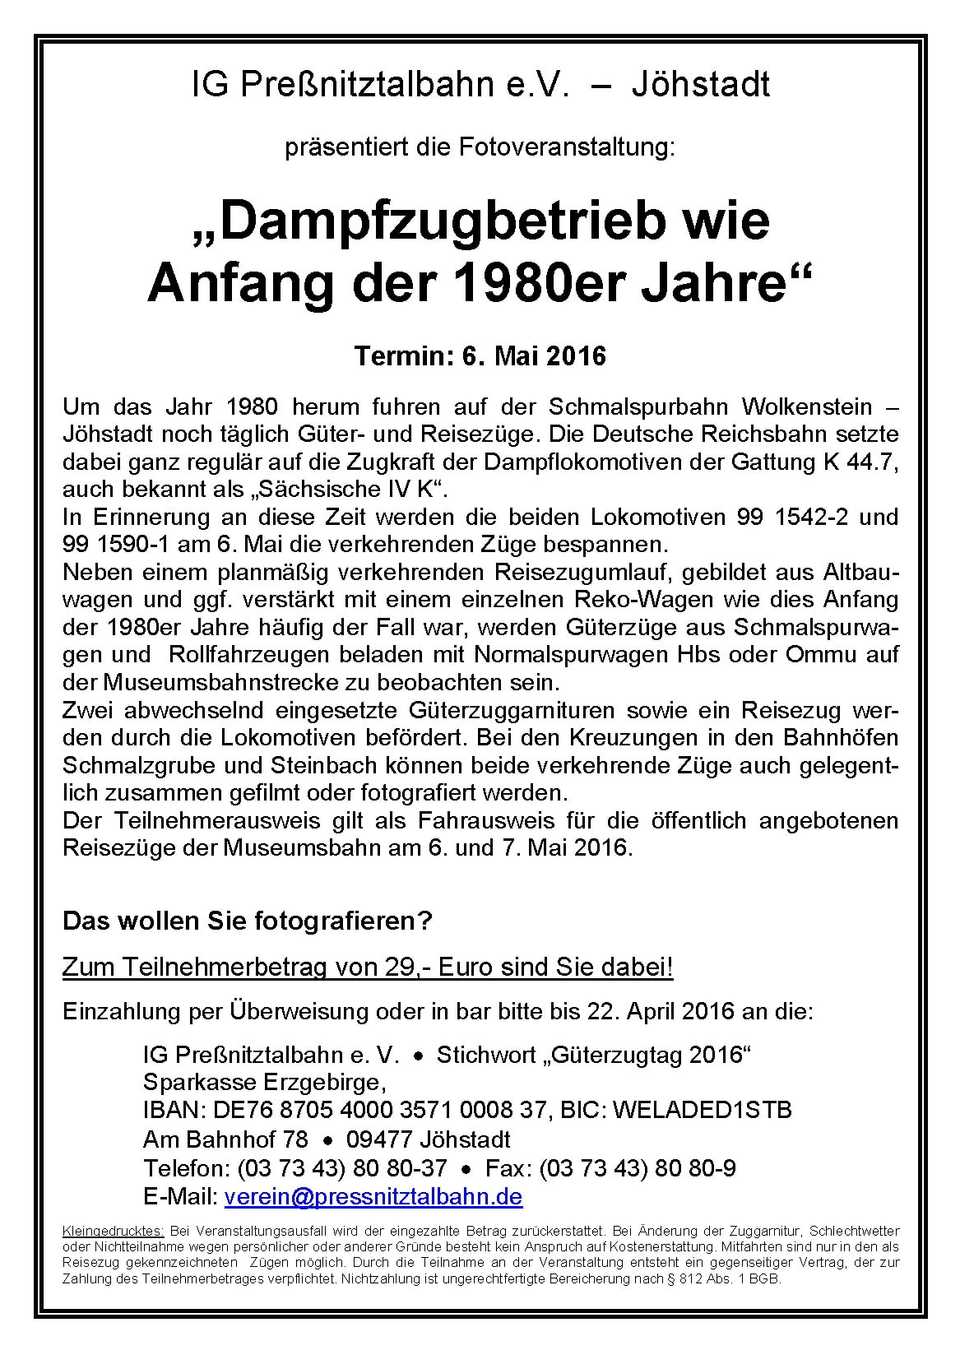 Veranstaltungsankündigung für "Dampfzugbetrieb wie Anfang der 1980er Jahre" am 6. Mai 2016.